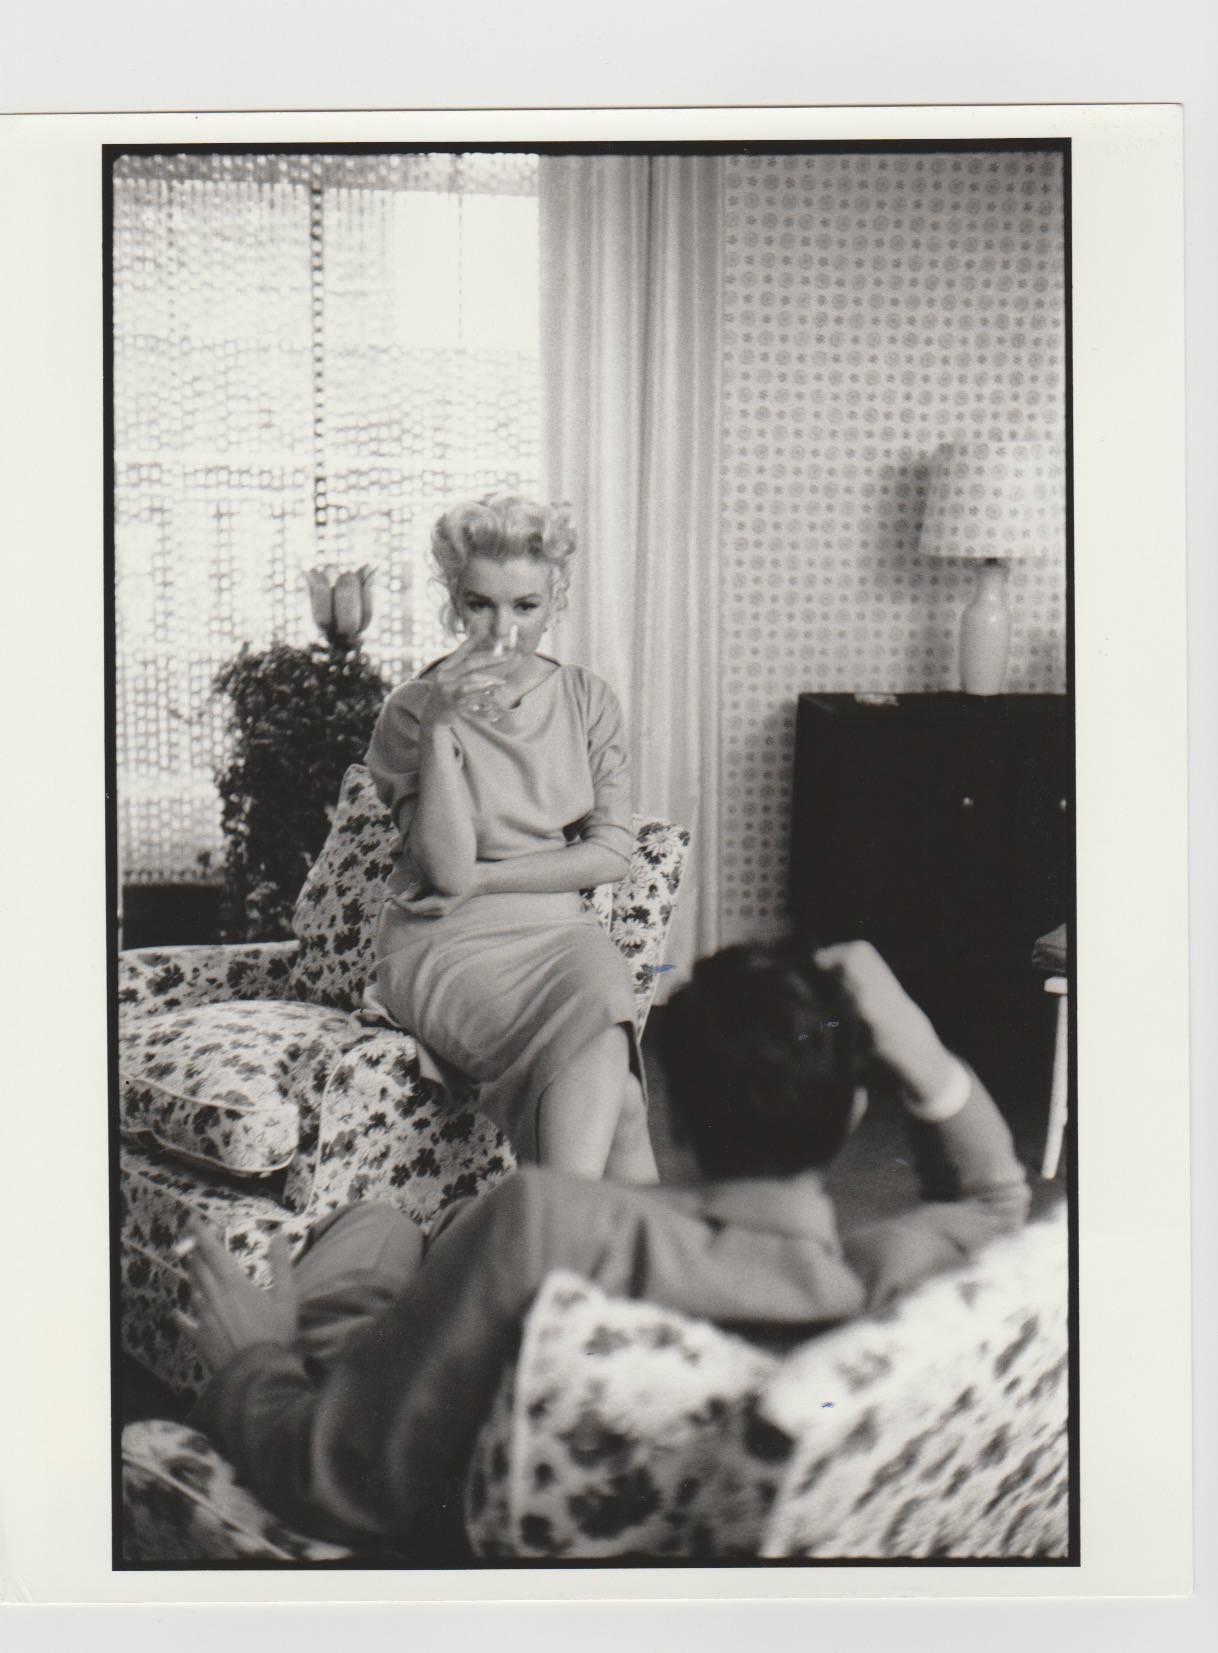 Edward Feingersh Black and White Photograph – Marilyn Monroe, einzigartiger Druck aus dem Jahr 1988 aus dem Originalnegativ